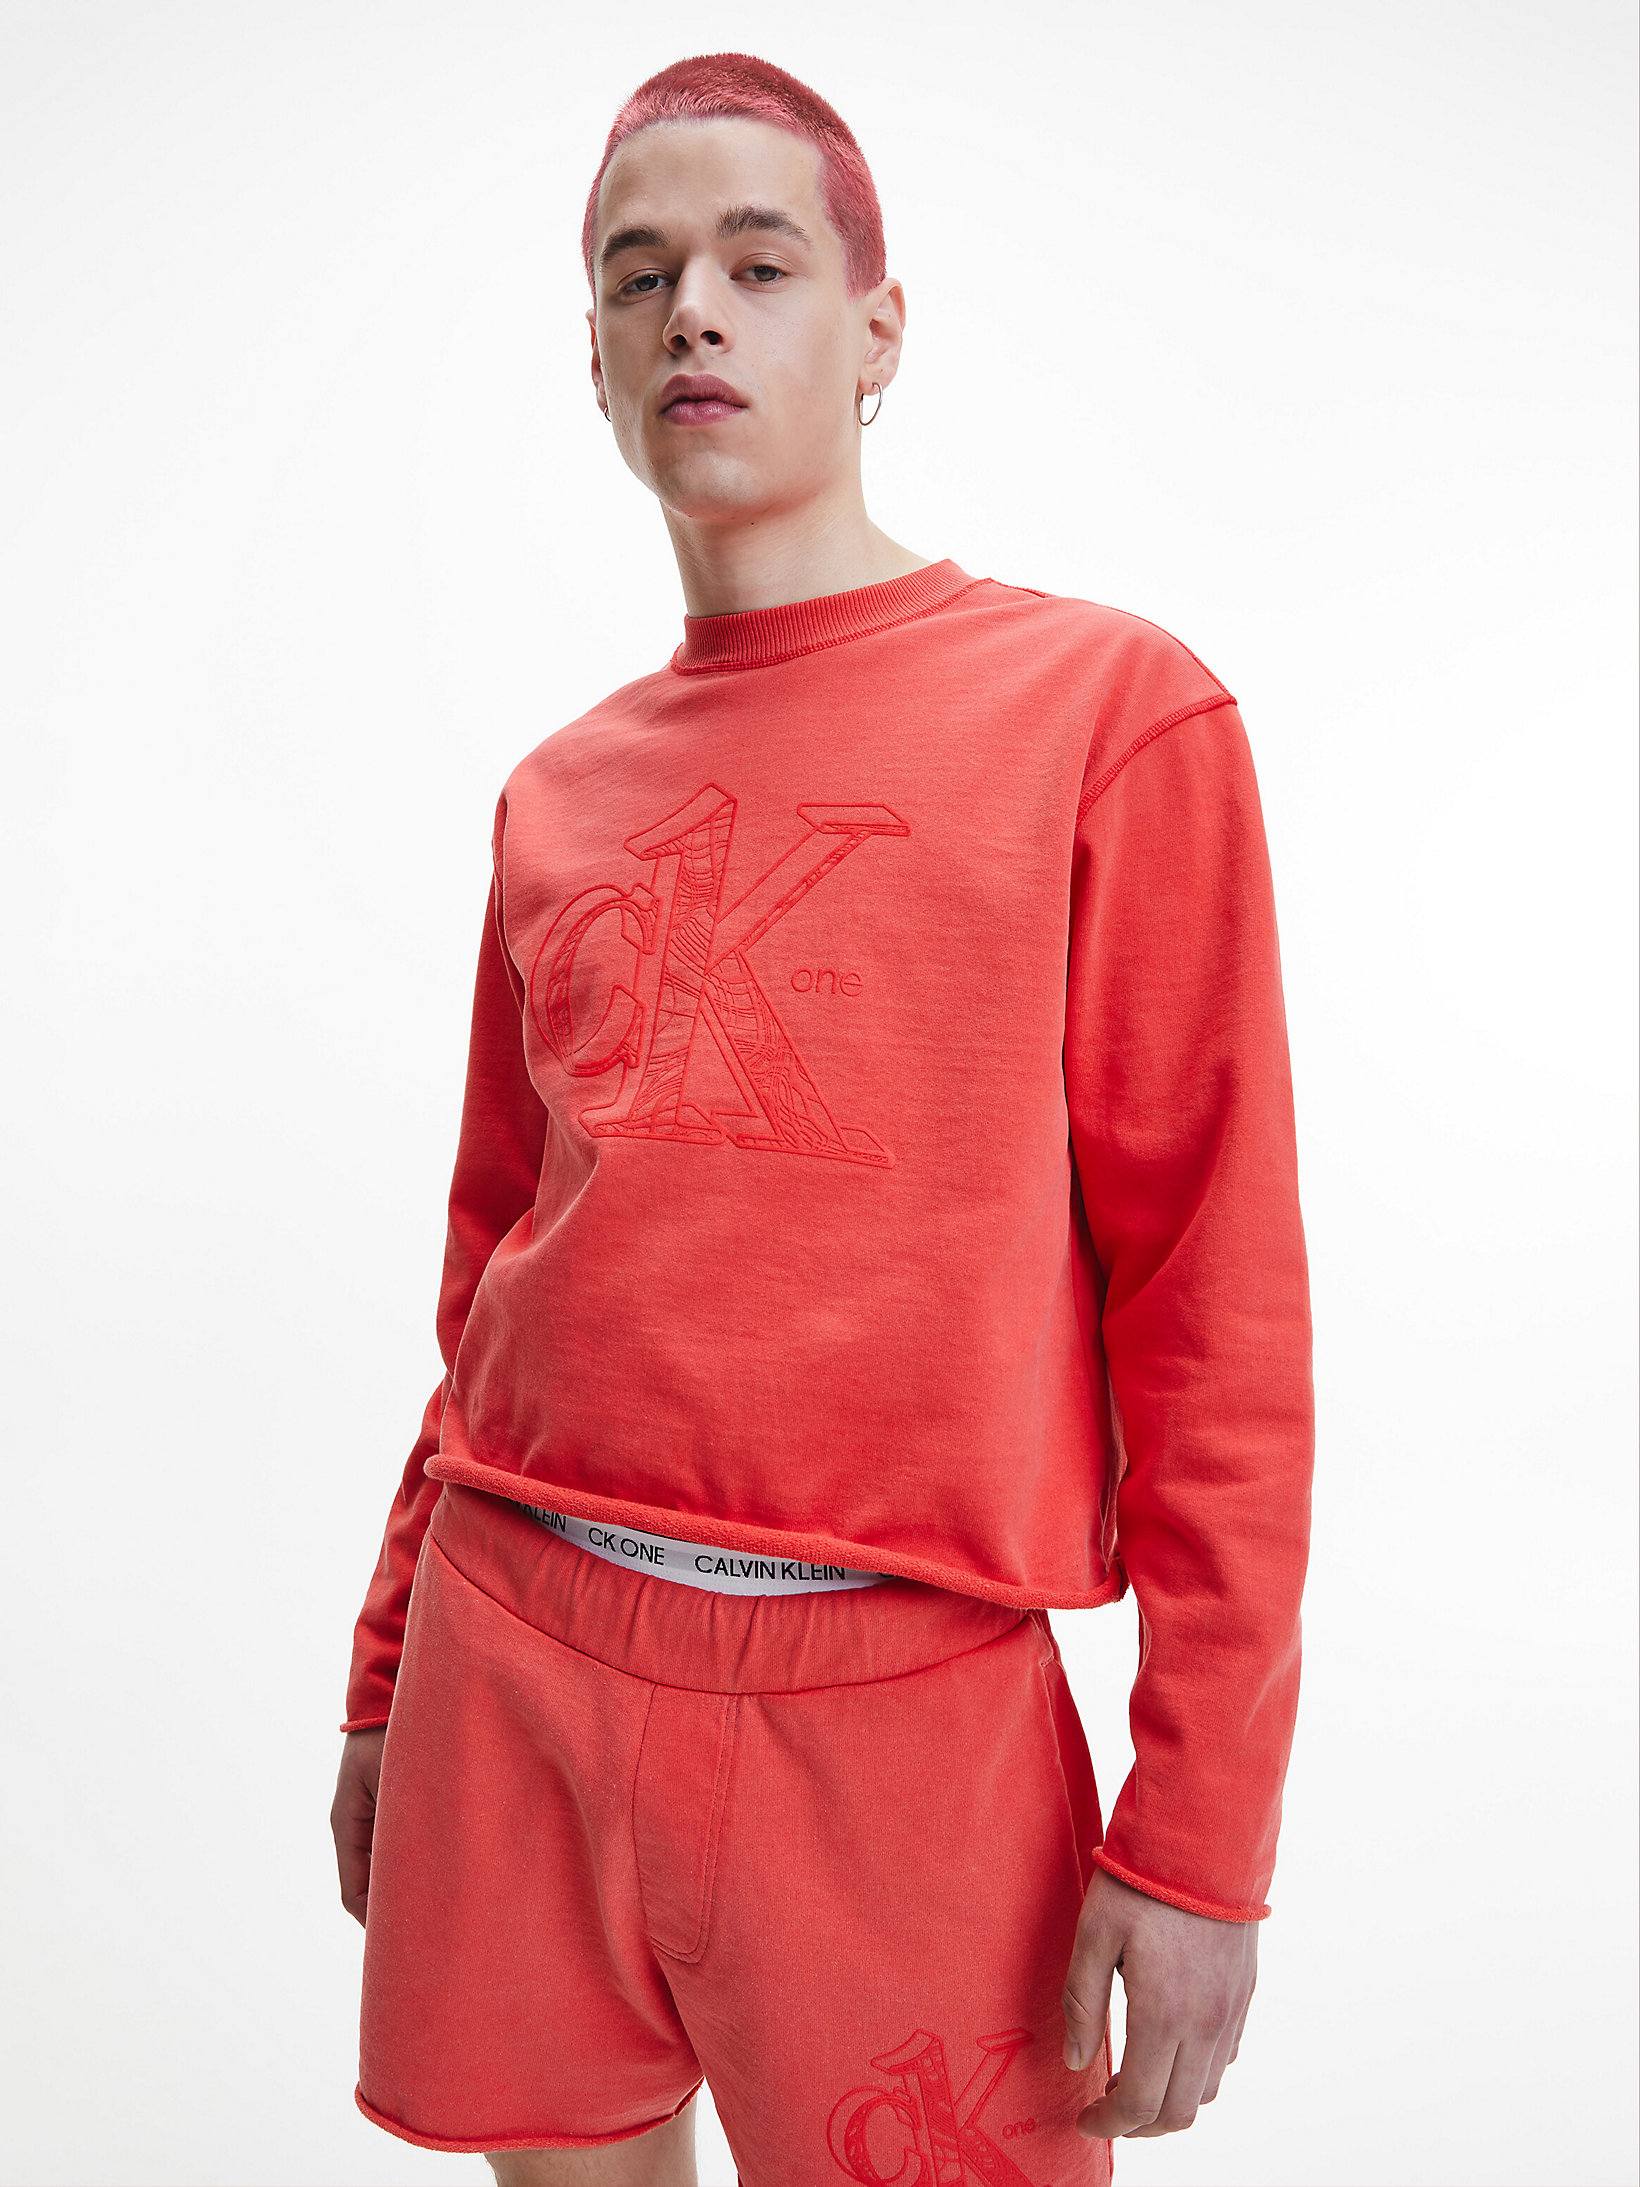 Fierce Red Unisex-Sweatshirt Aus Recycelter Baumwolle - CK One undefined unisex Calvin Klein